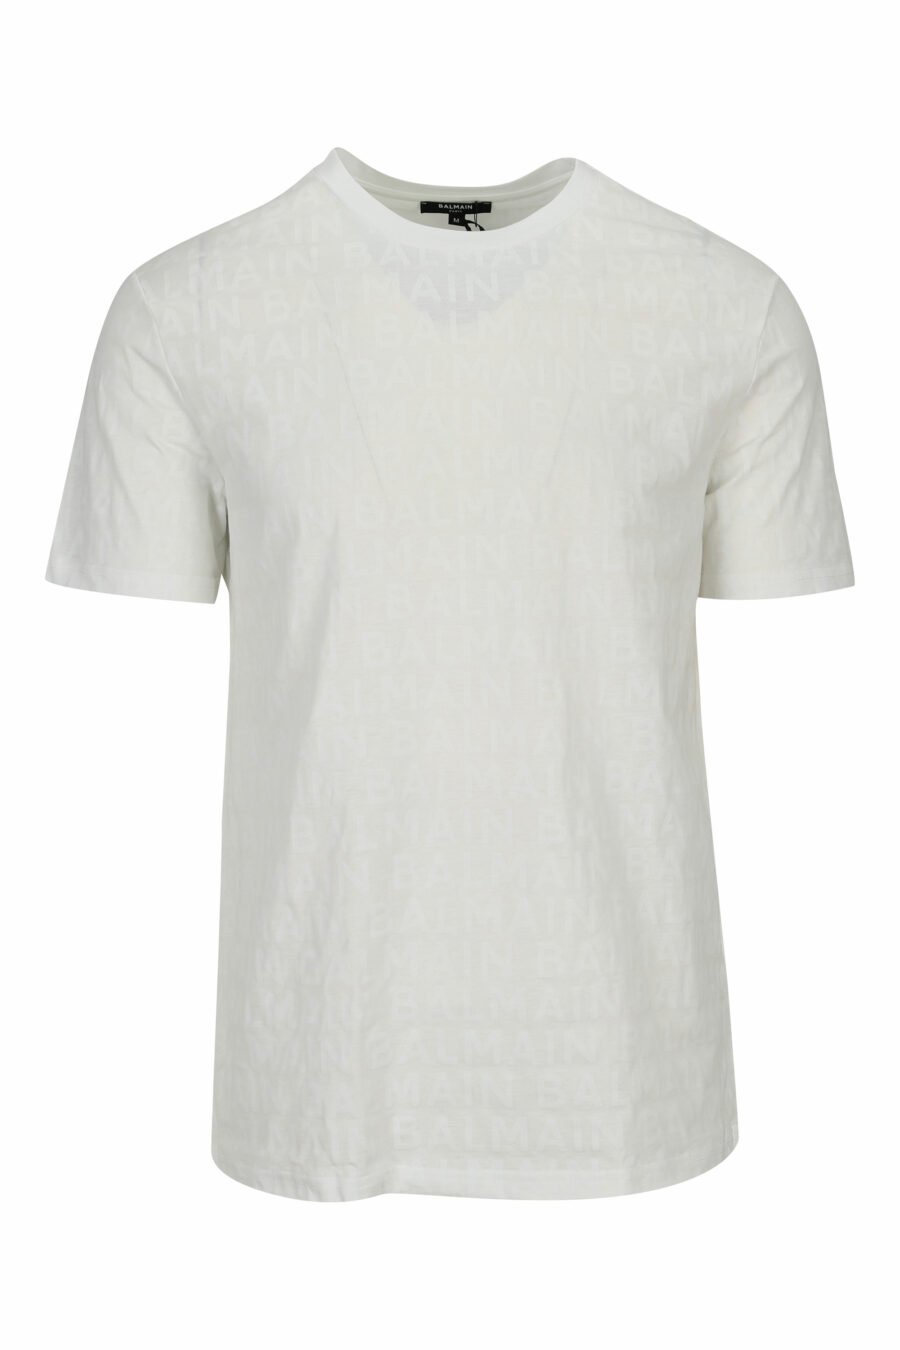 Weißes T-Shirt mit monochromem Monogramm - 8032674525390